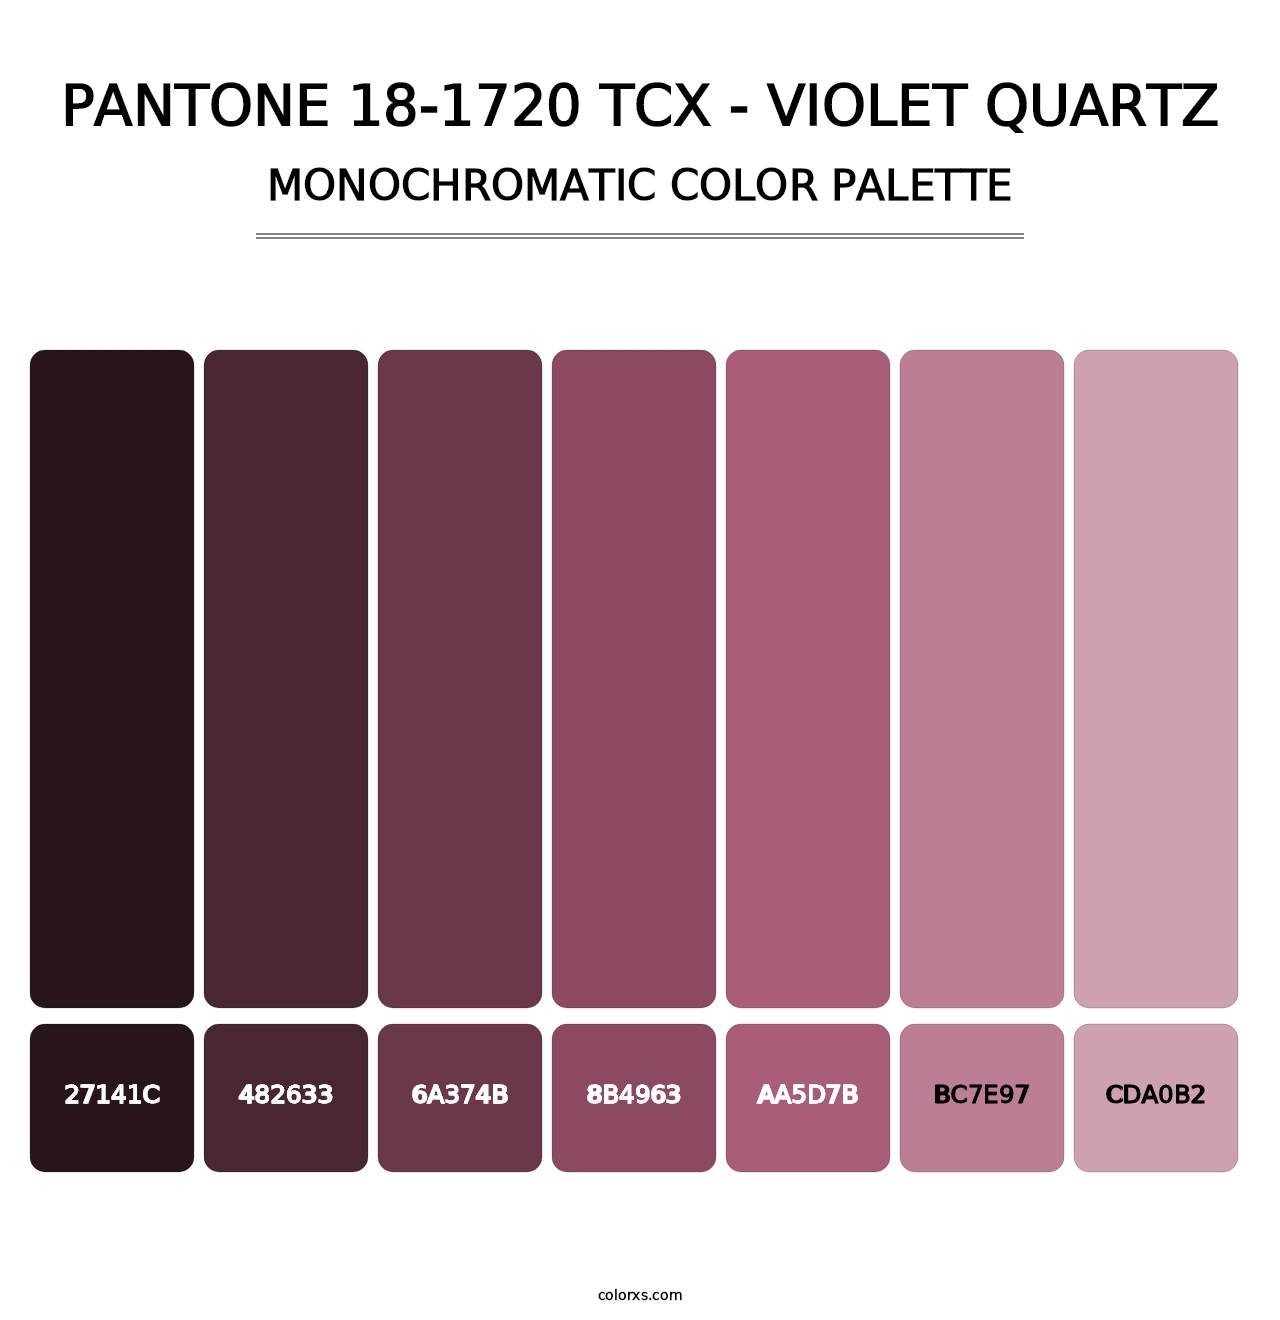 PANTONE 18-1720 TCX - Violet Quartz - Monochromatic Color Palette